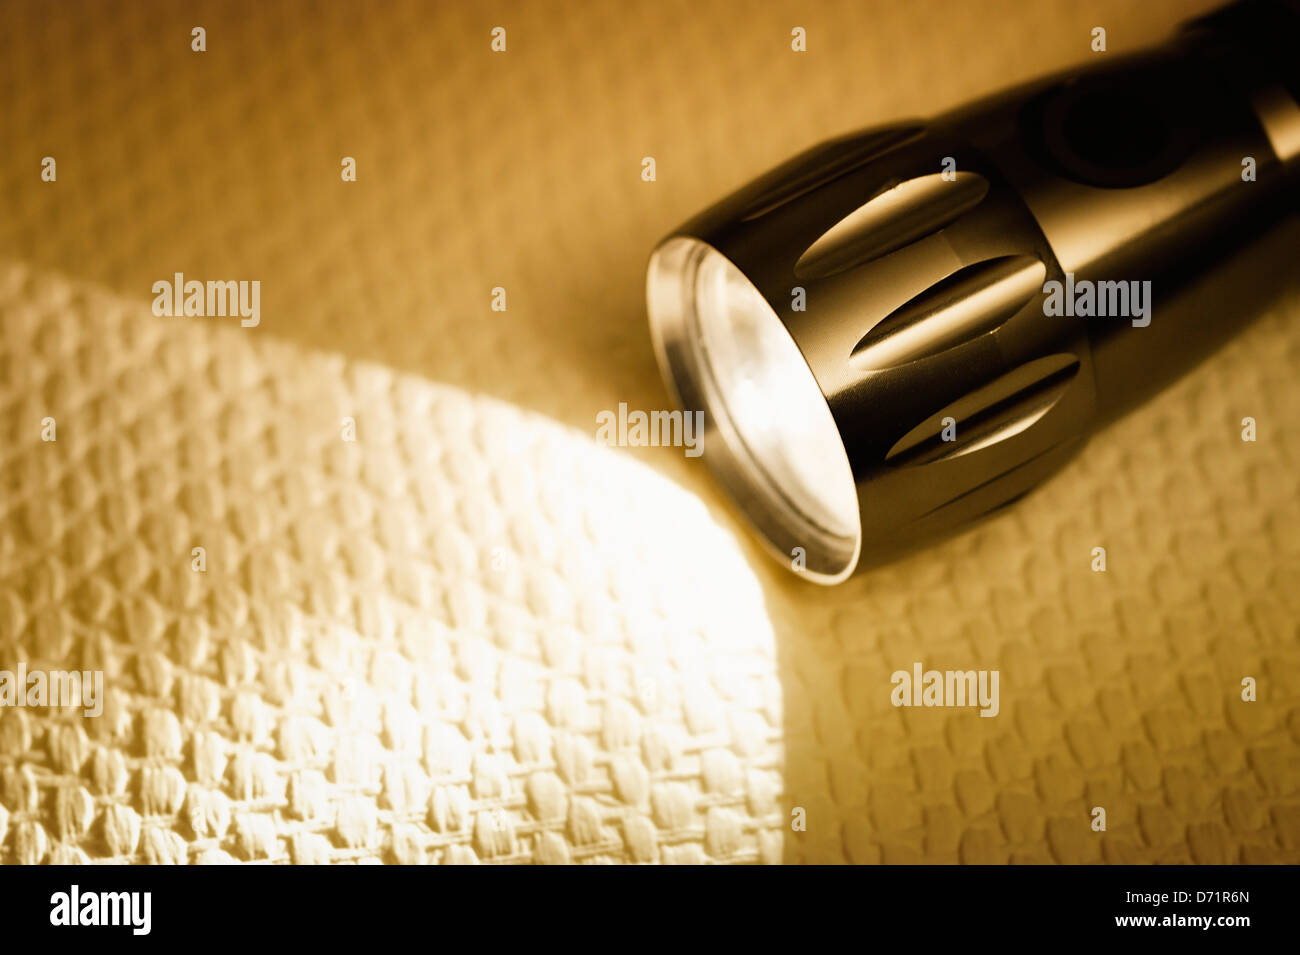 Taschenlampe mit Lichtkegel, symbolische Foto Stream Ausfall, blackout  Stockfotografie - Alamy